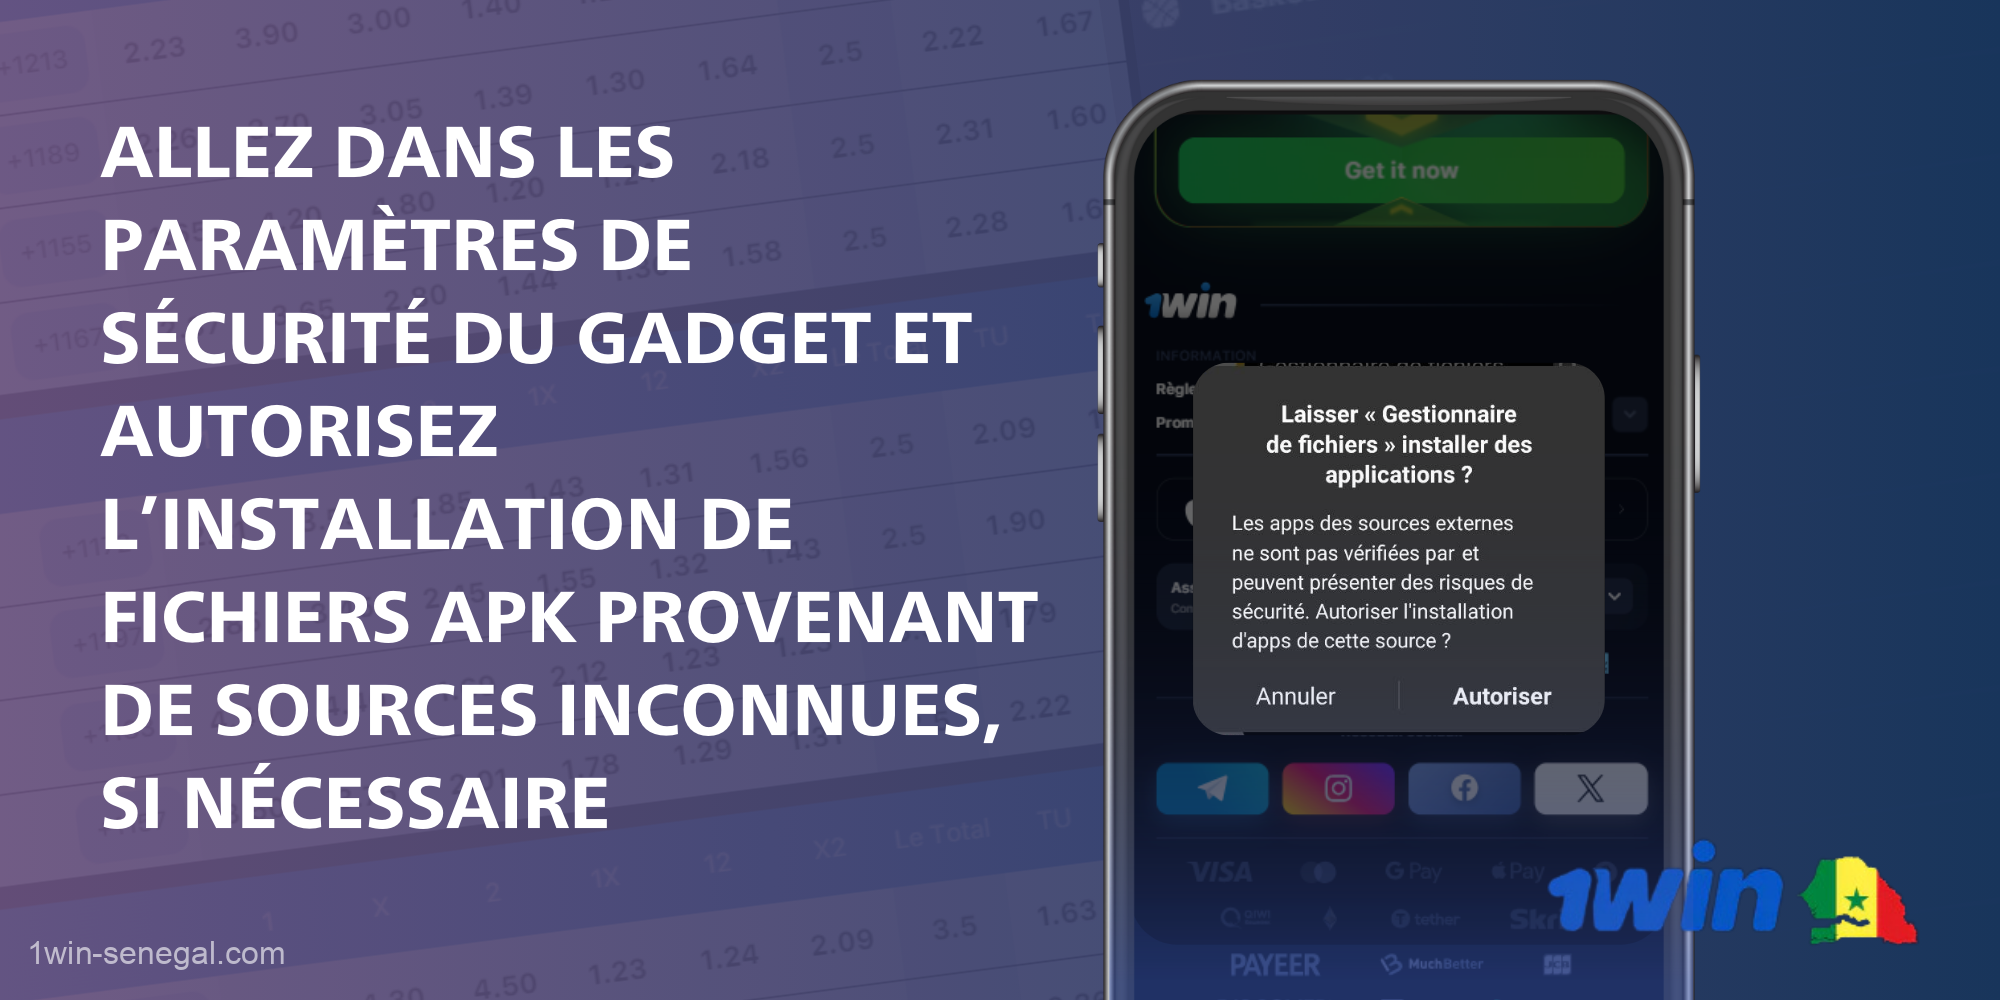 Pour installer 1Win sur un smartphone, un utilisateur sénégalais doit autoriser l'installation de fichiers apk de sources inconnues dans les paramètres du téléphone